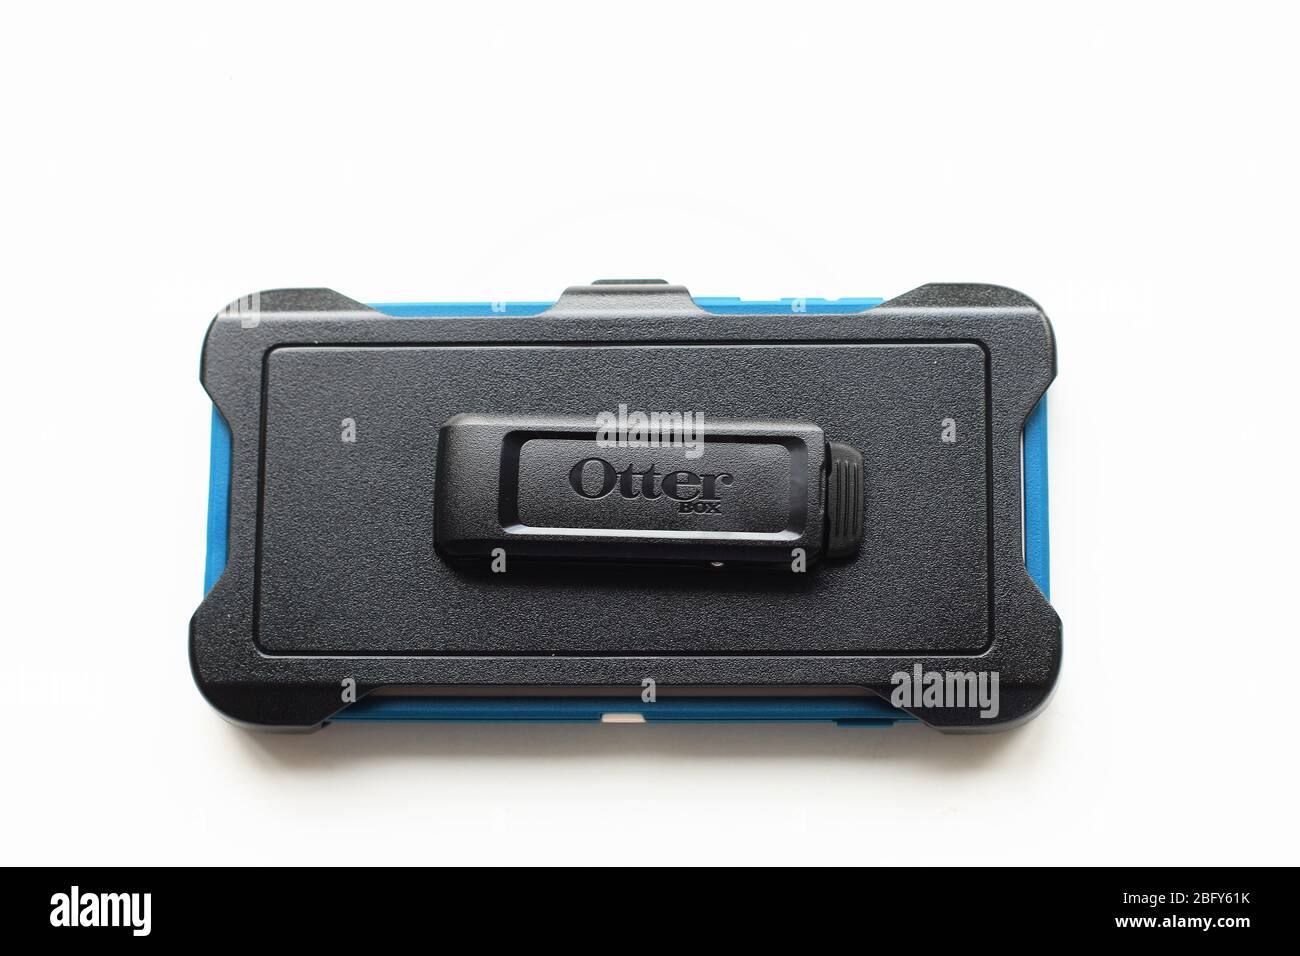 Protecteur de téléphone mobile OtterBox Defender pour Samsung Galaxy S10+ isolé sur fond blanc Banque D'Images